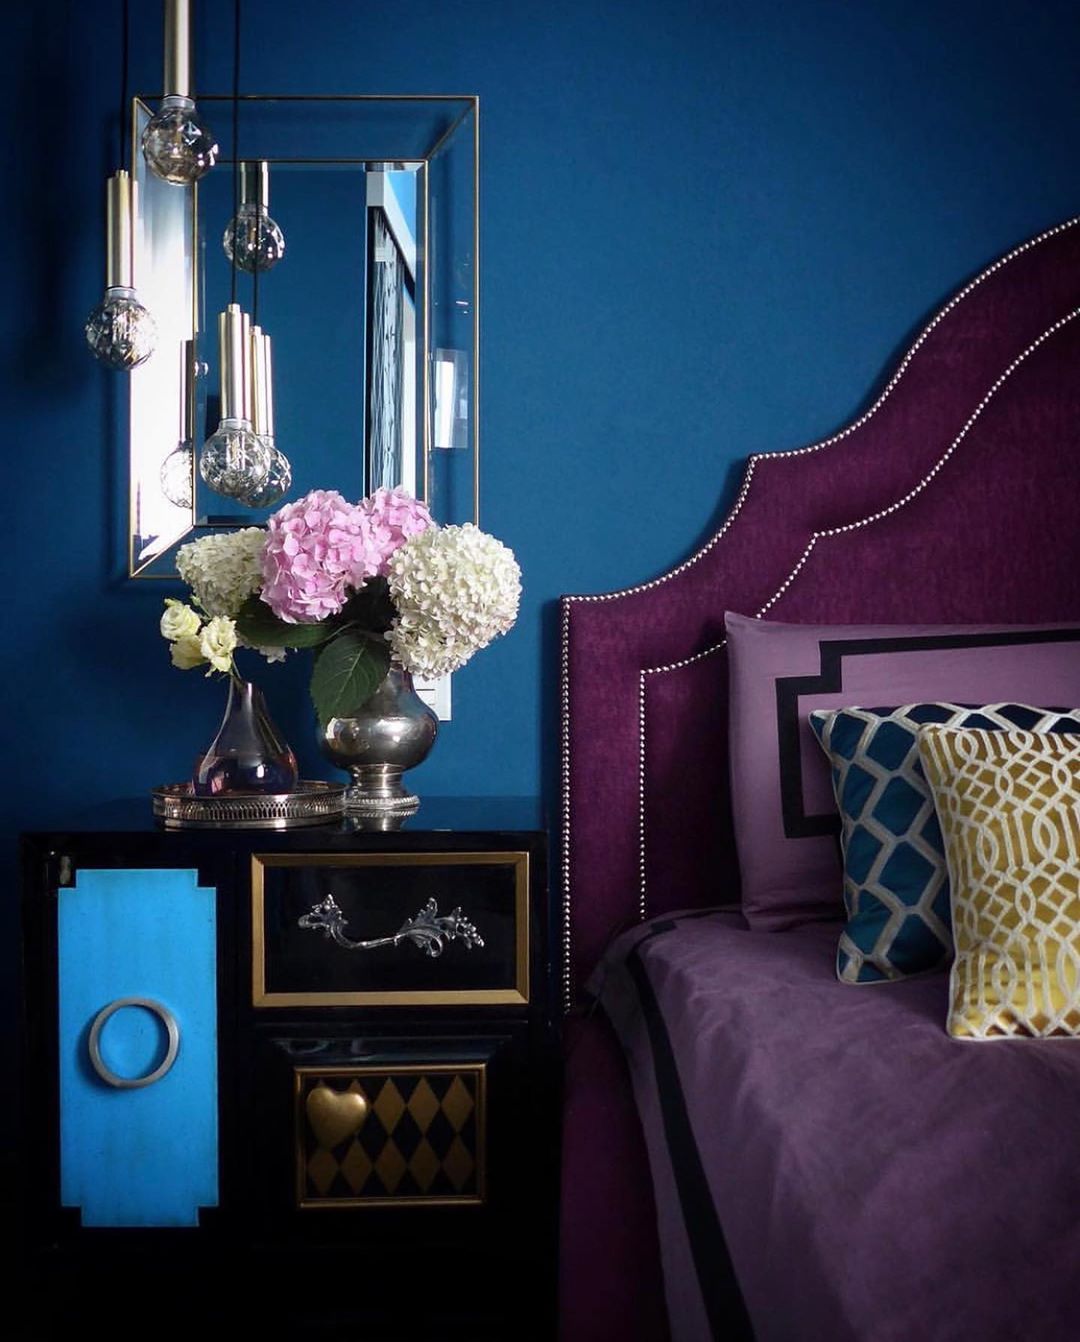 Bộ chăn ga gối màu tím nhạt kết hợp vải bọc đầu giường màu tím đậm, cả sắc hoa nhẹ nhàng cho căn phòng thêm quyến rũ.